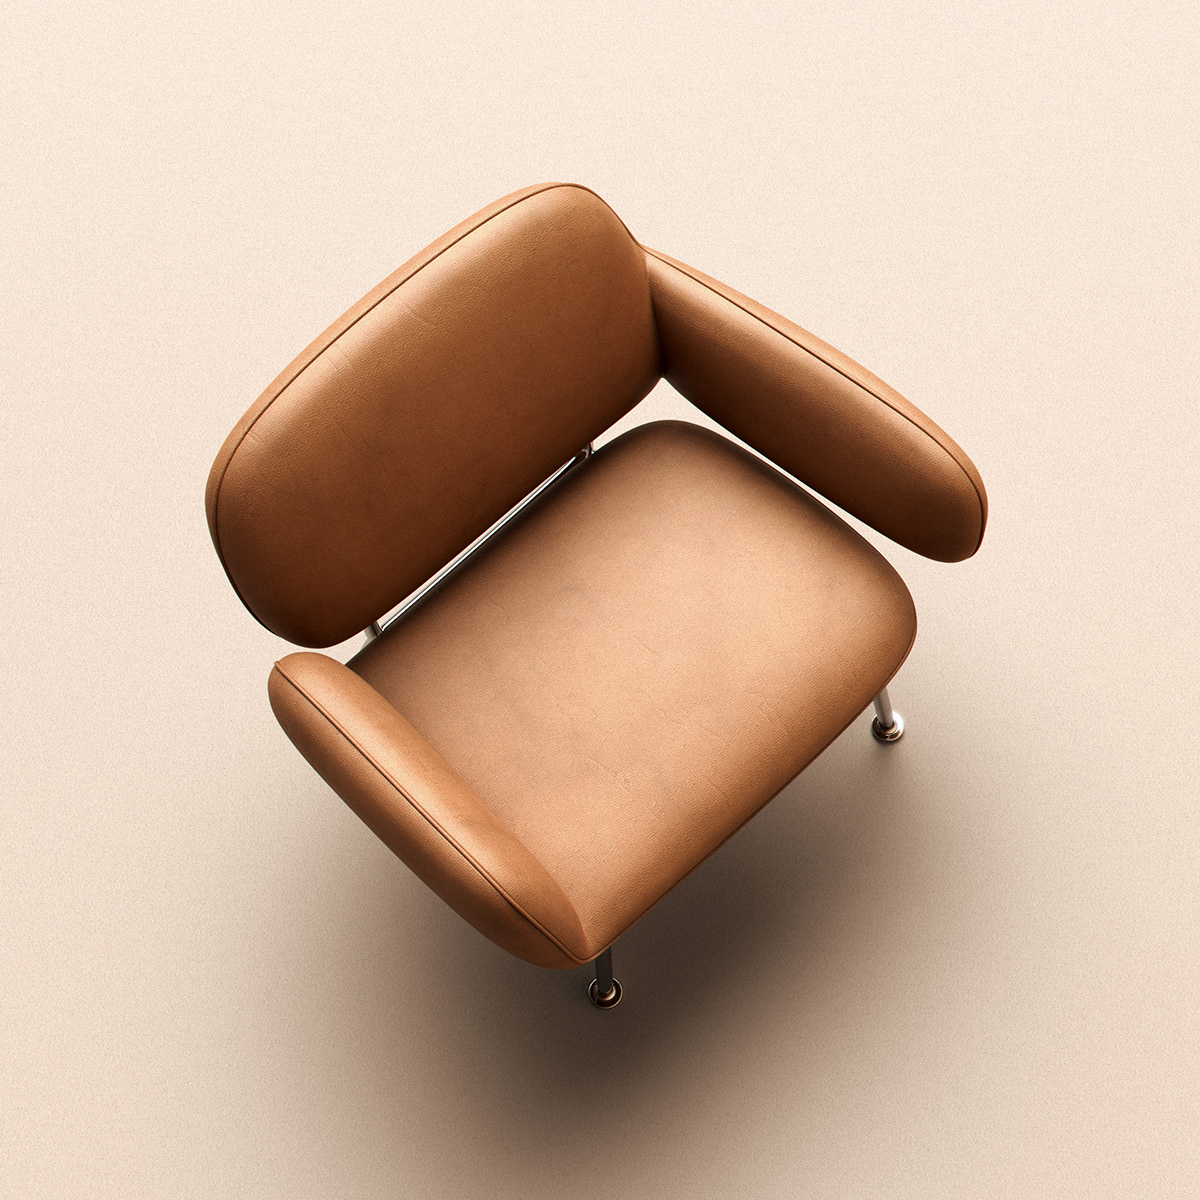 chair design furniture hug leather lounge metal modern upholstered vr